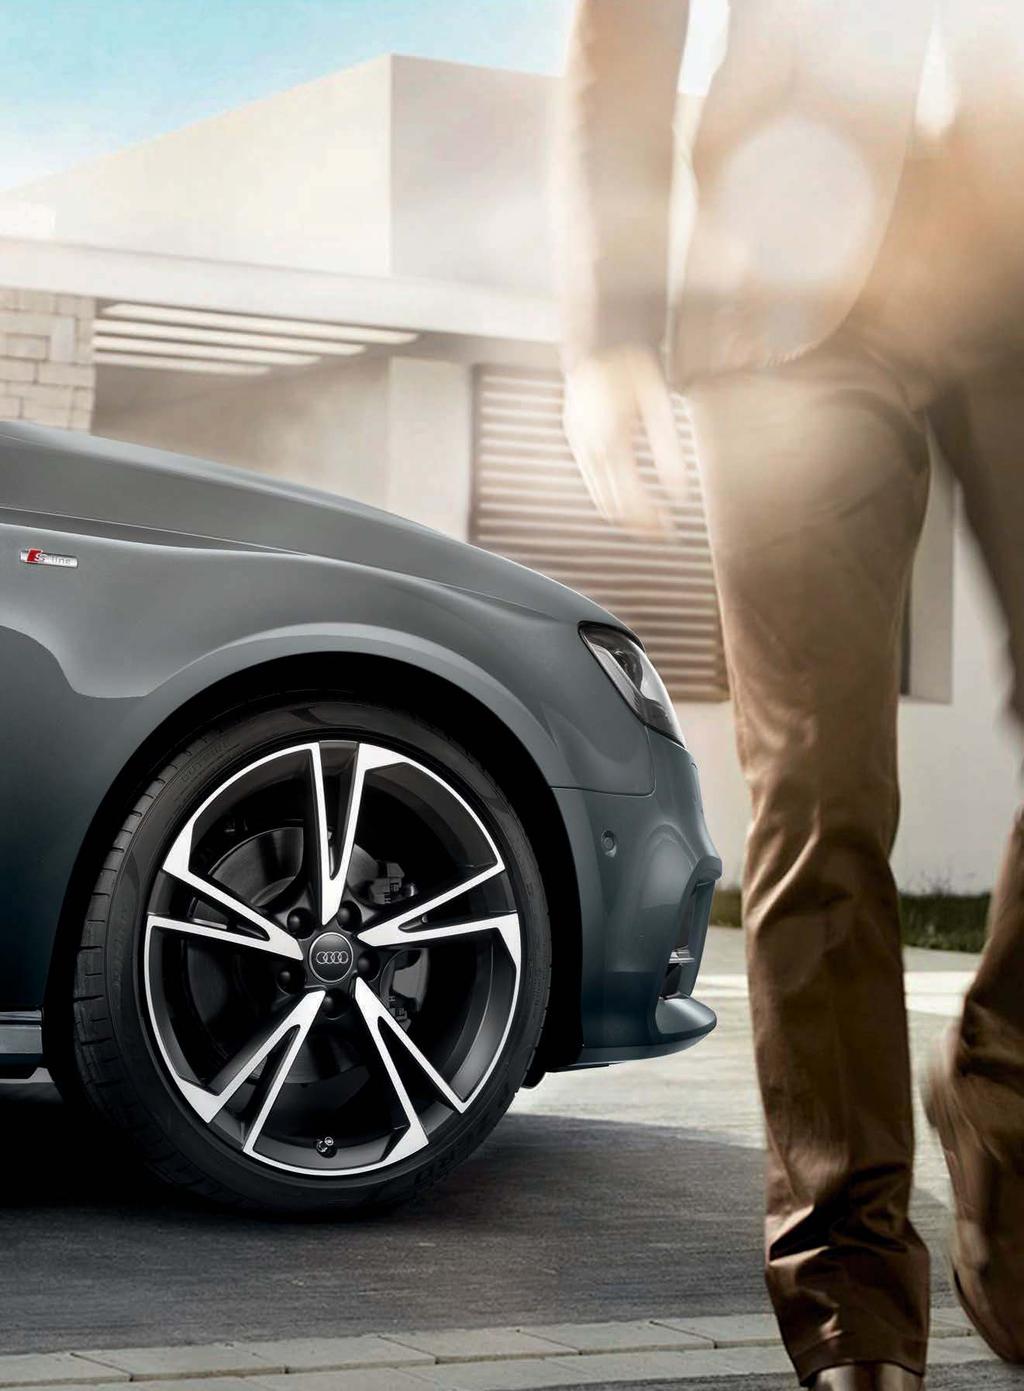 Wirkungsvoll. Unsere hochwertigen Audi Sommerkompletträder verbinden sportliches Design mit hoher Funktionalität und unterstreichen eindrucksvoll den Charakter Ihres Fahrzeugs.